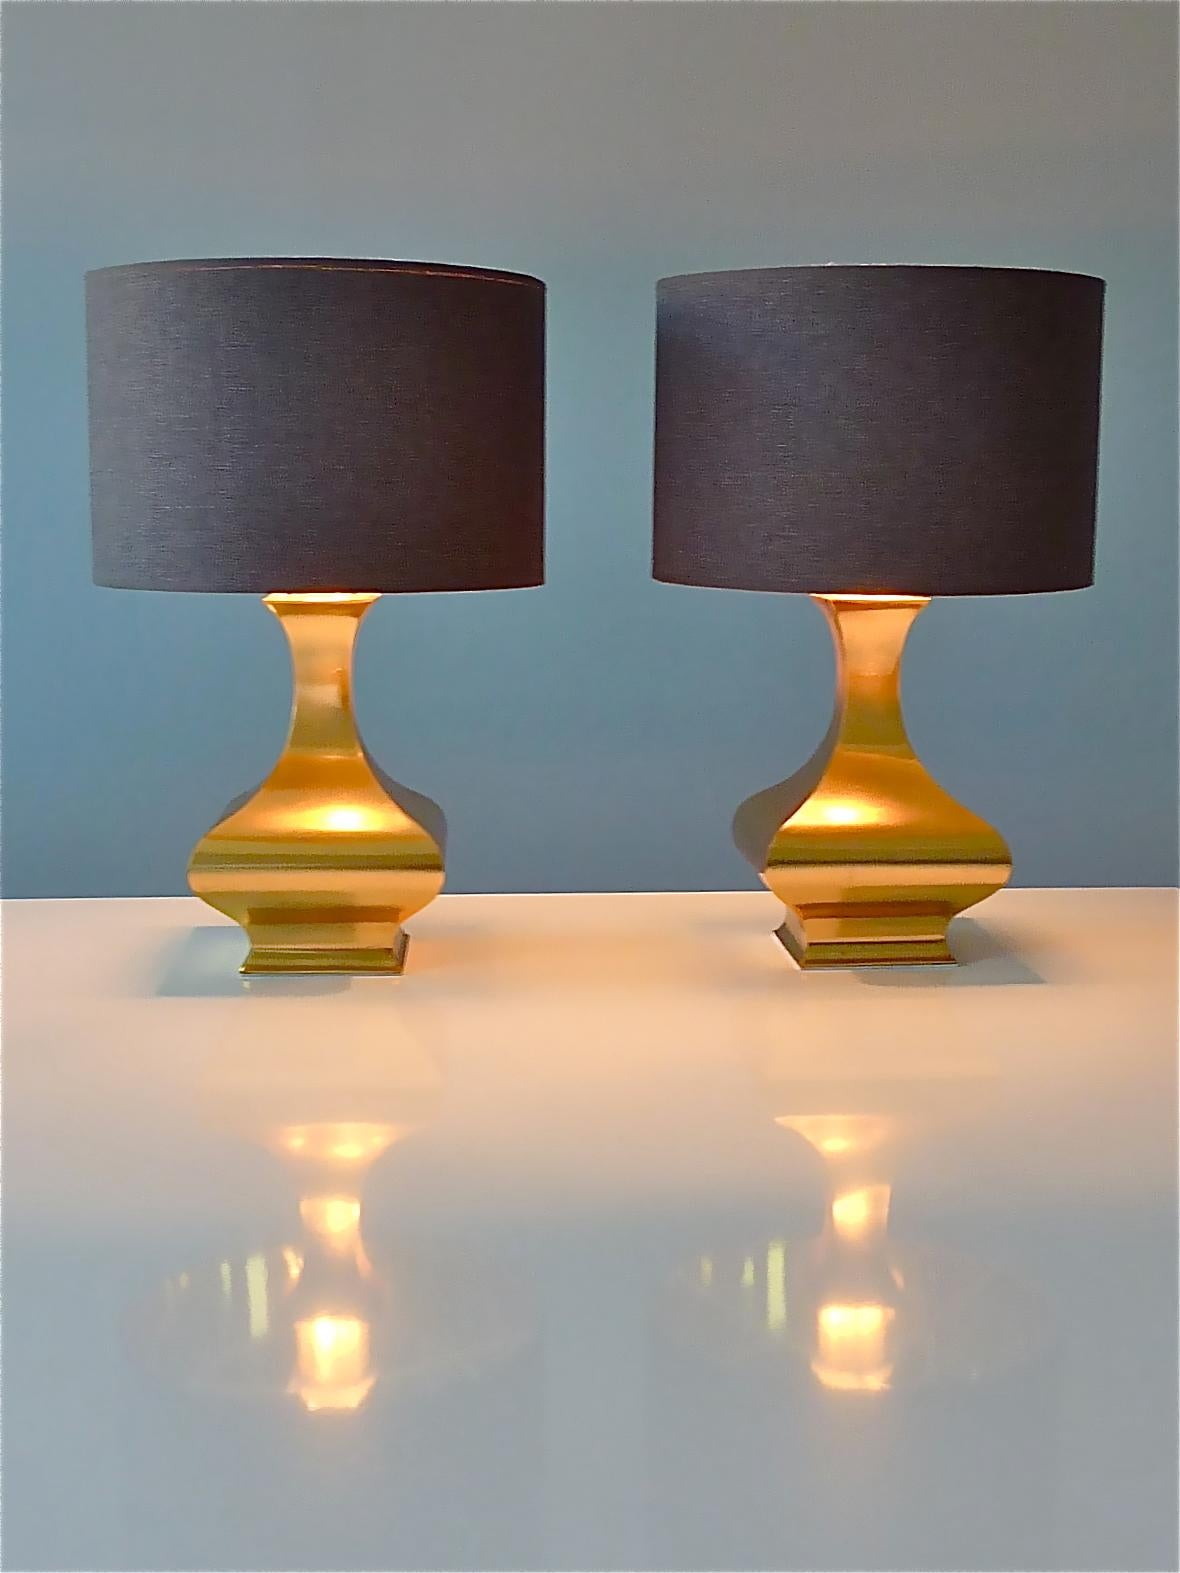 Erstaunlich seltenes Paar vergoldeter Messing-Edelstahl-Tischlampen, entworfen von Maria Pergay, Frankreich, um 1970er Jahre. Jede Tischleuchte hat eine Kunststofffassung und kann mit einer E27-Schraubglühbirne beleuchtet werden. Verdrahtung und